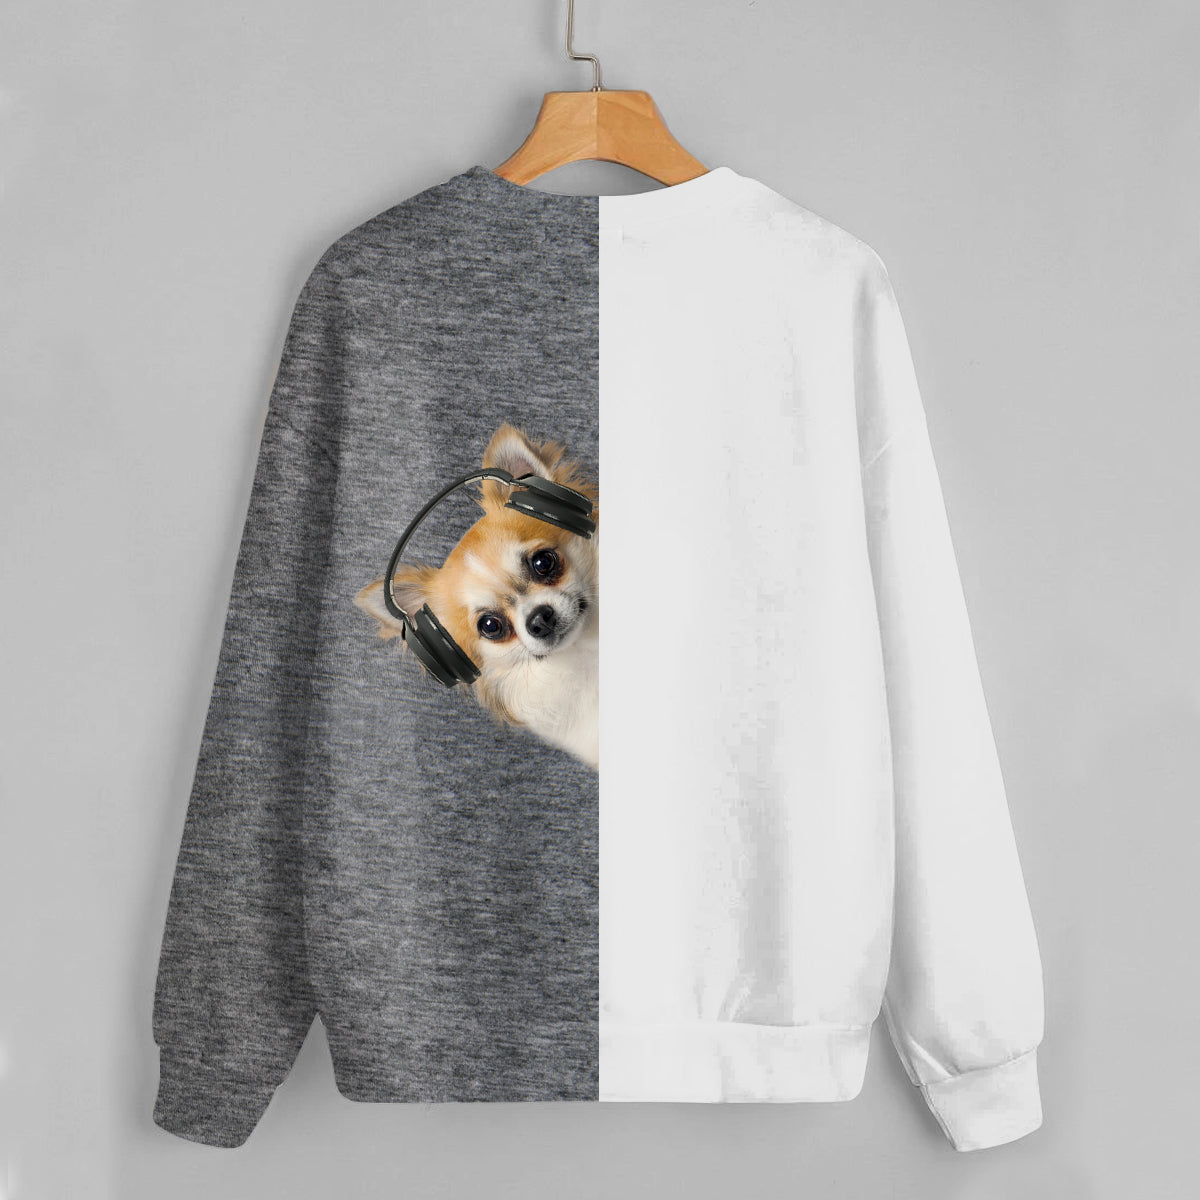 Funny Happy Time - Chihuahua Sweatshirt V8